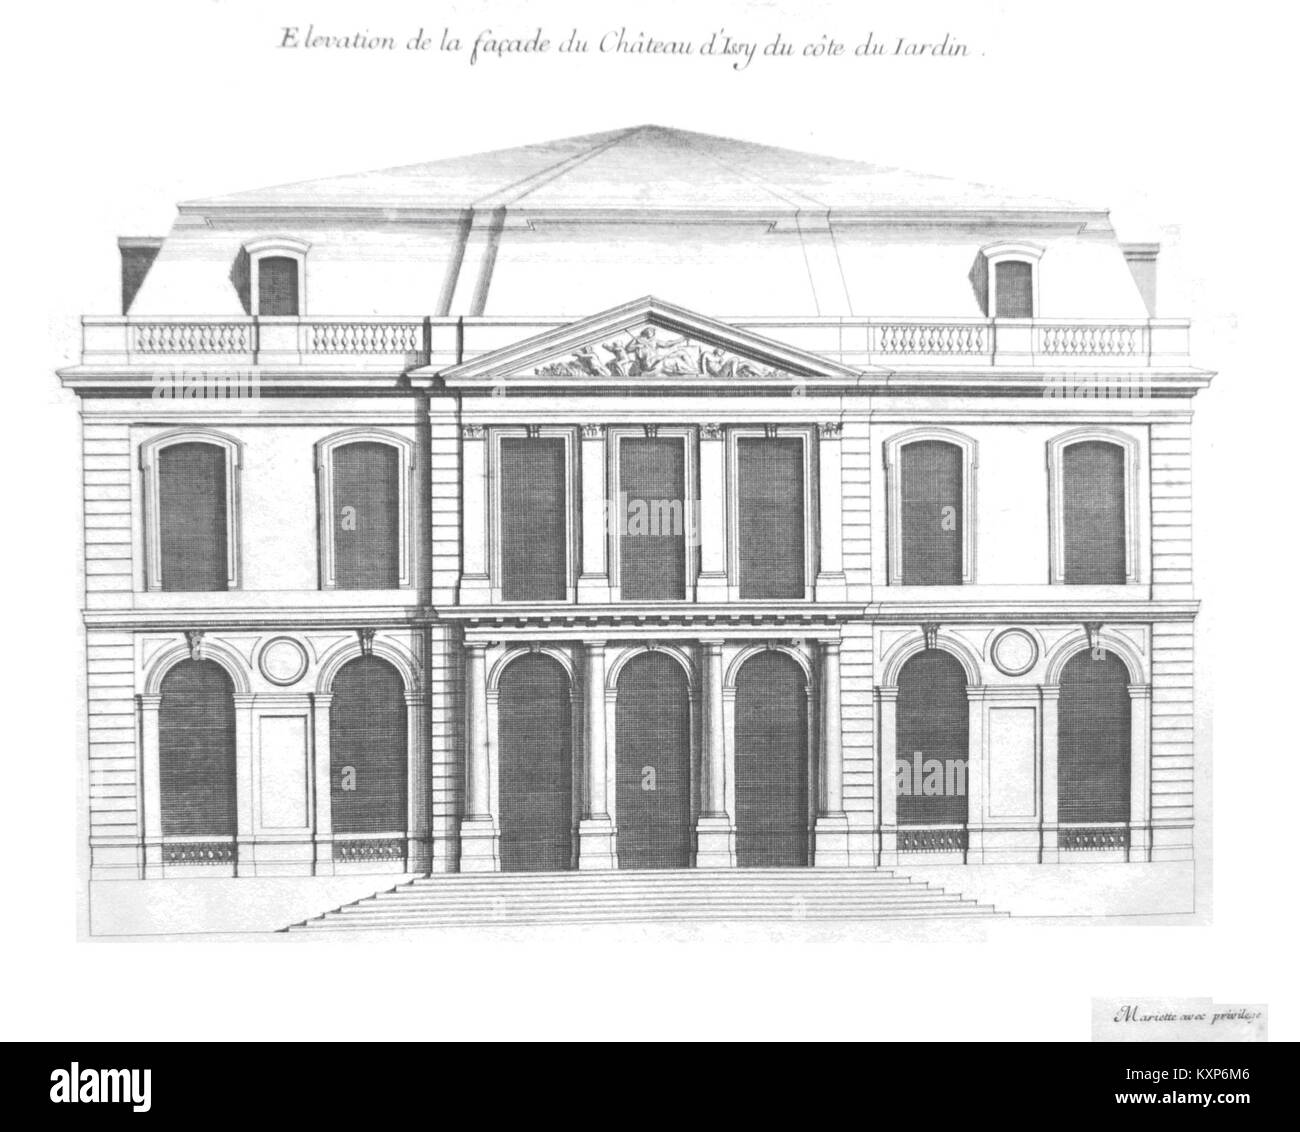 Elévation du Château Du côté des jardins Mariette 1725 Stockfoto